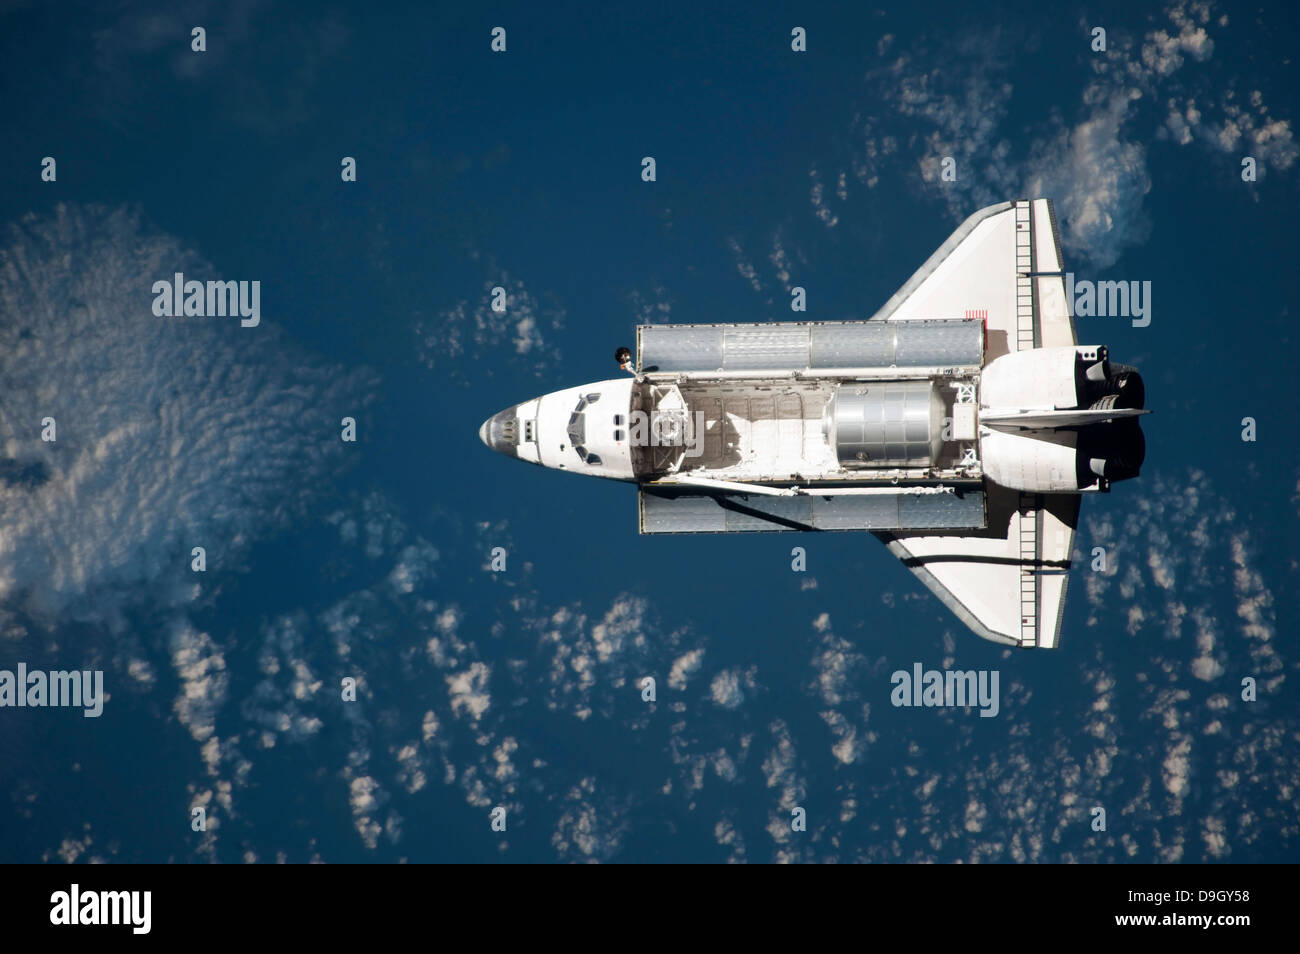 Vista aérea del transbordador espacial Discovery en tierra mientras se acerca a la Estación Espacial Internacional. Foto de stock